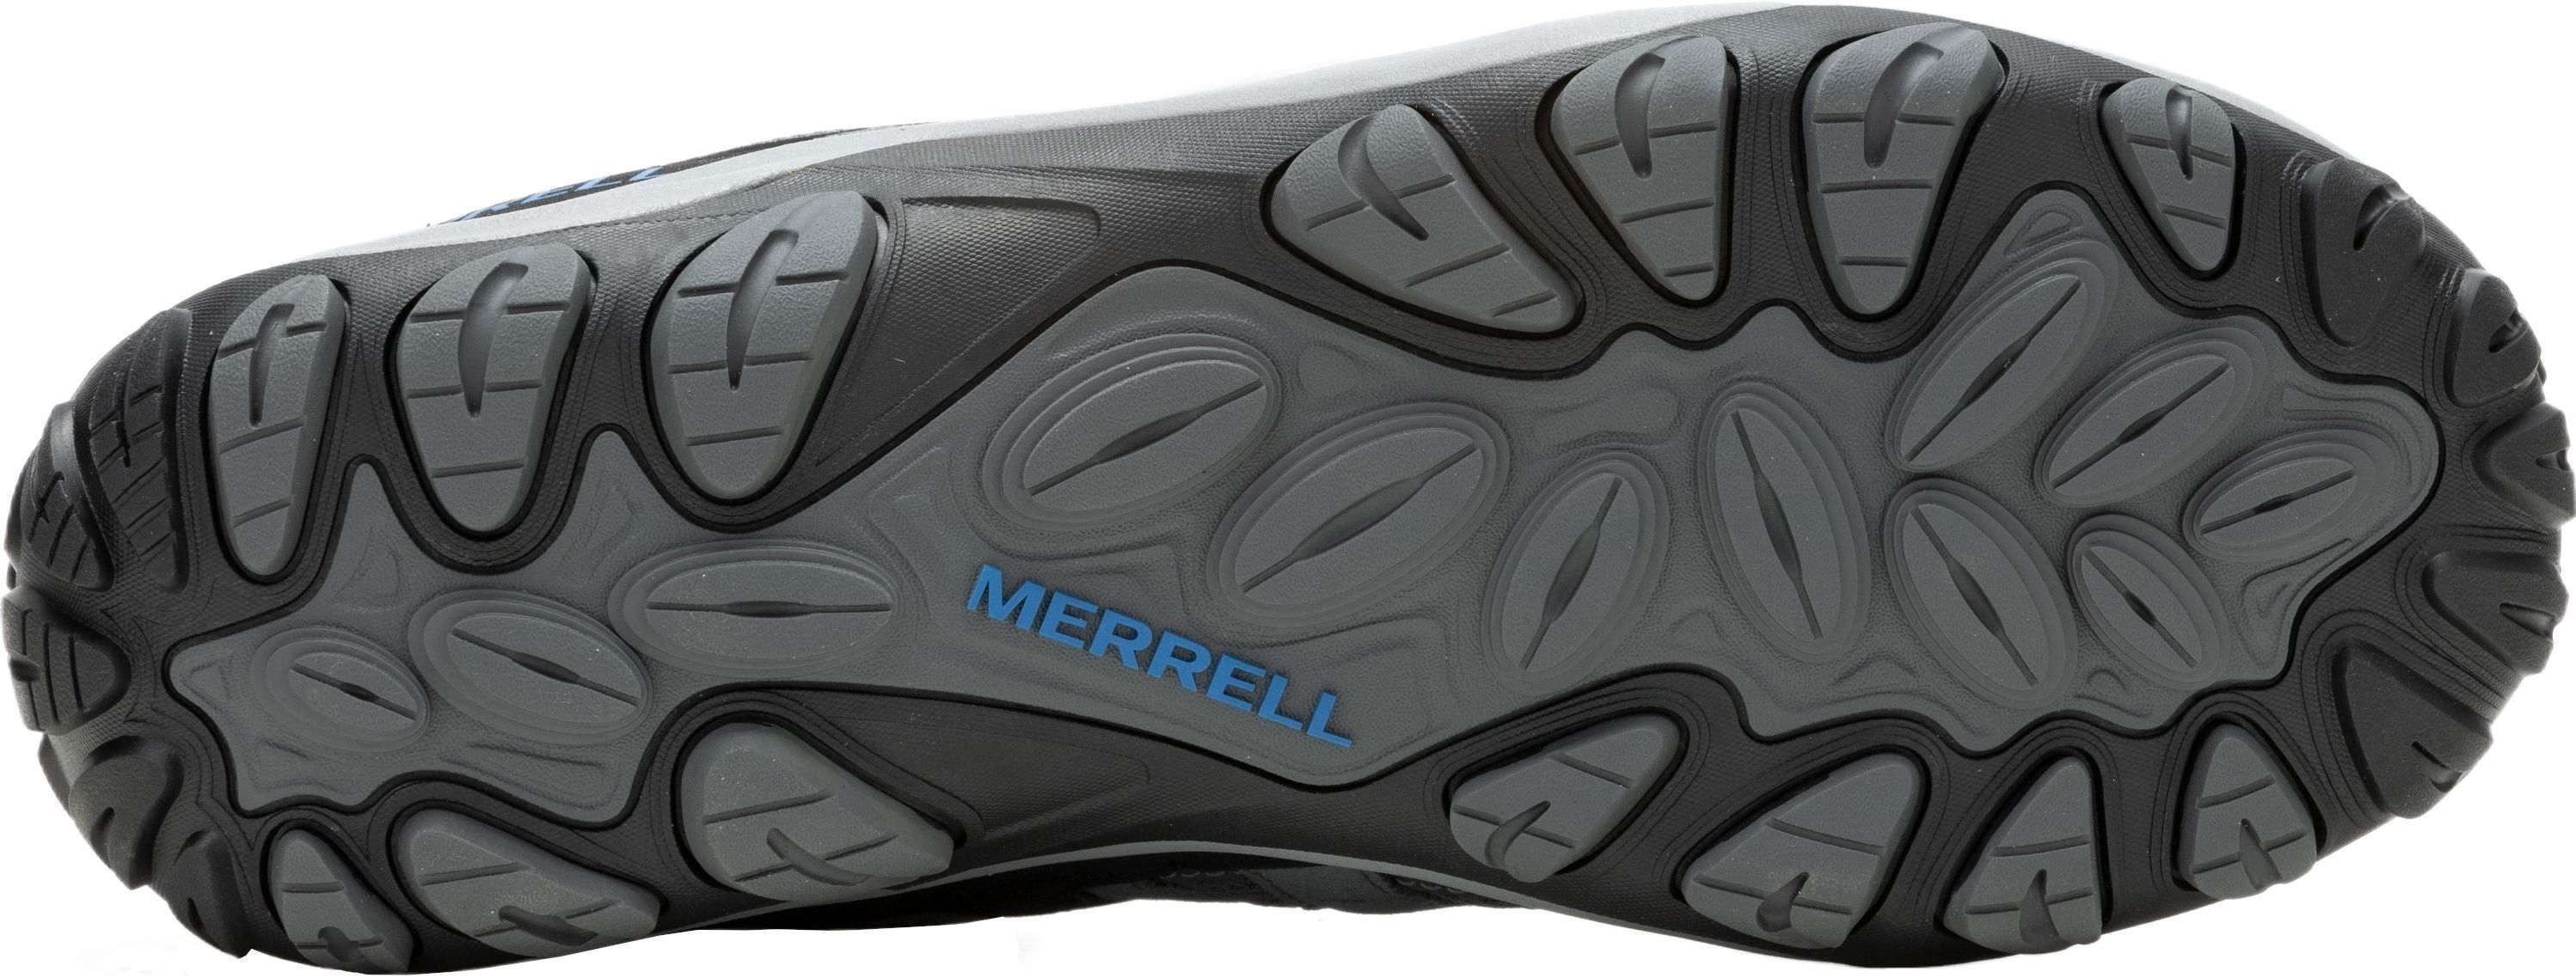 Кроссовки мужские Merrell Accentor 3 Rock/Blue 44 серый/синий фото 6